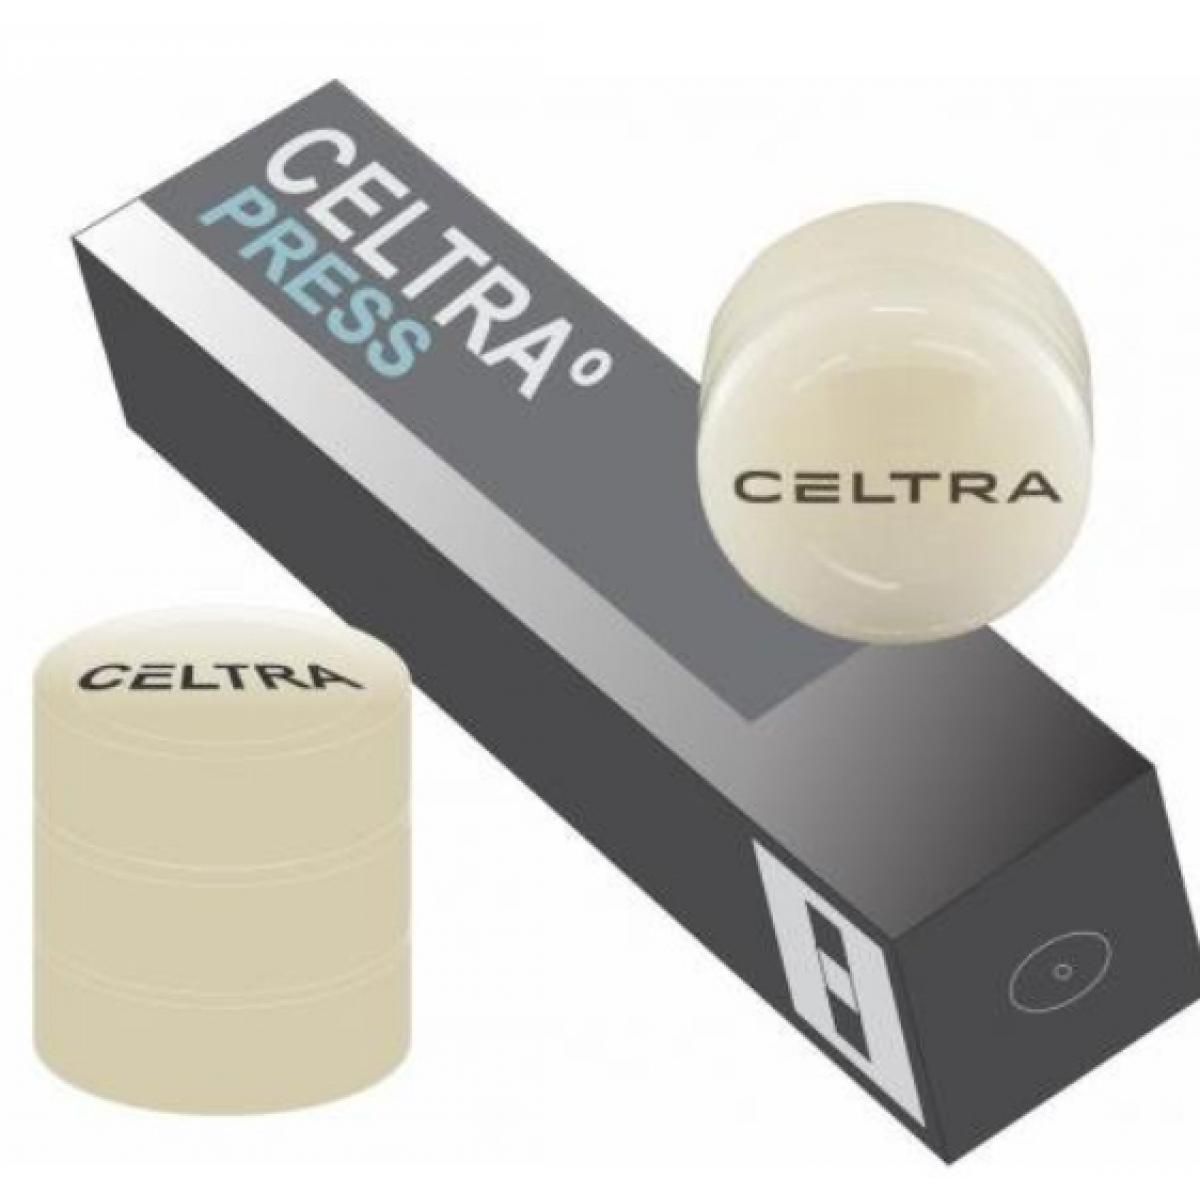 CELTRA PRESS MT D3 5 X 3 GR DENTSPLY -